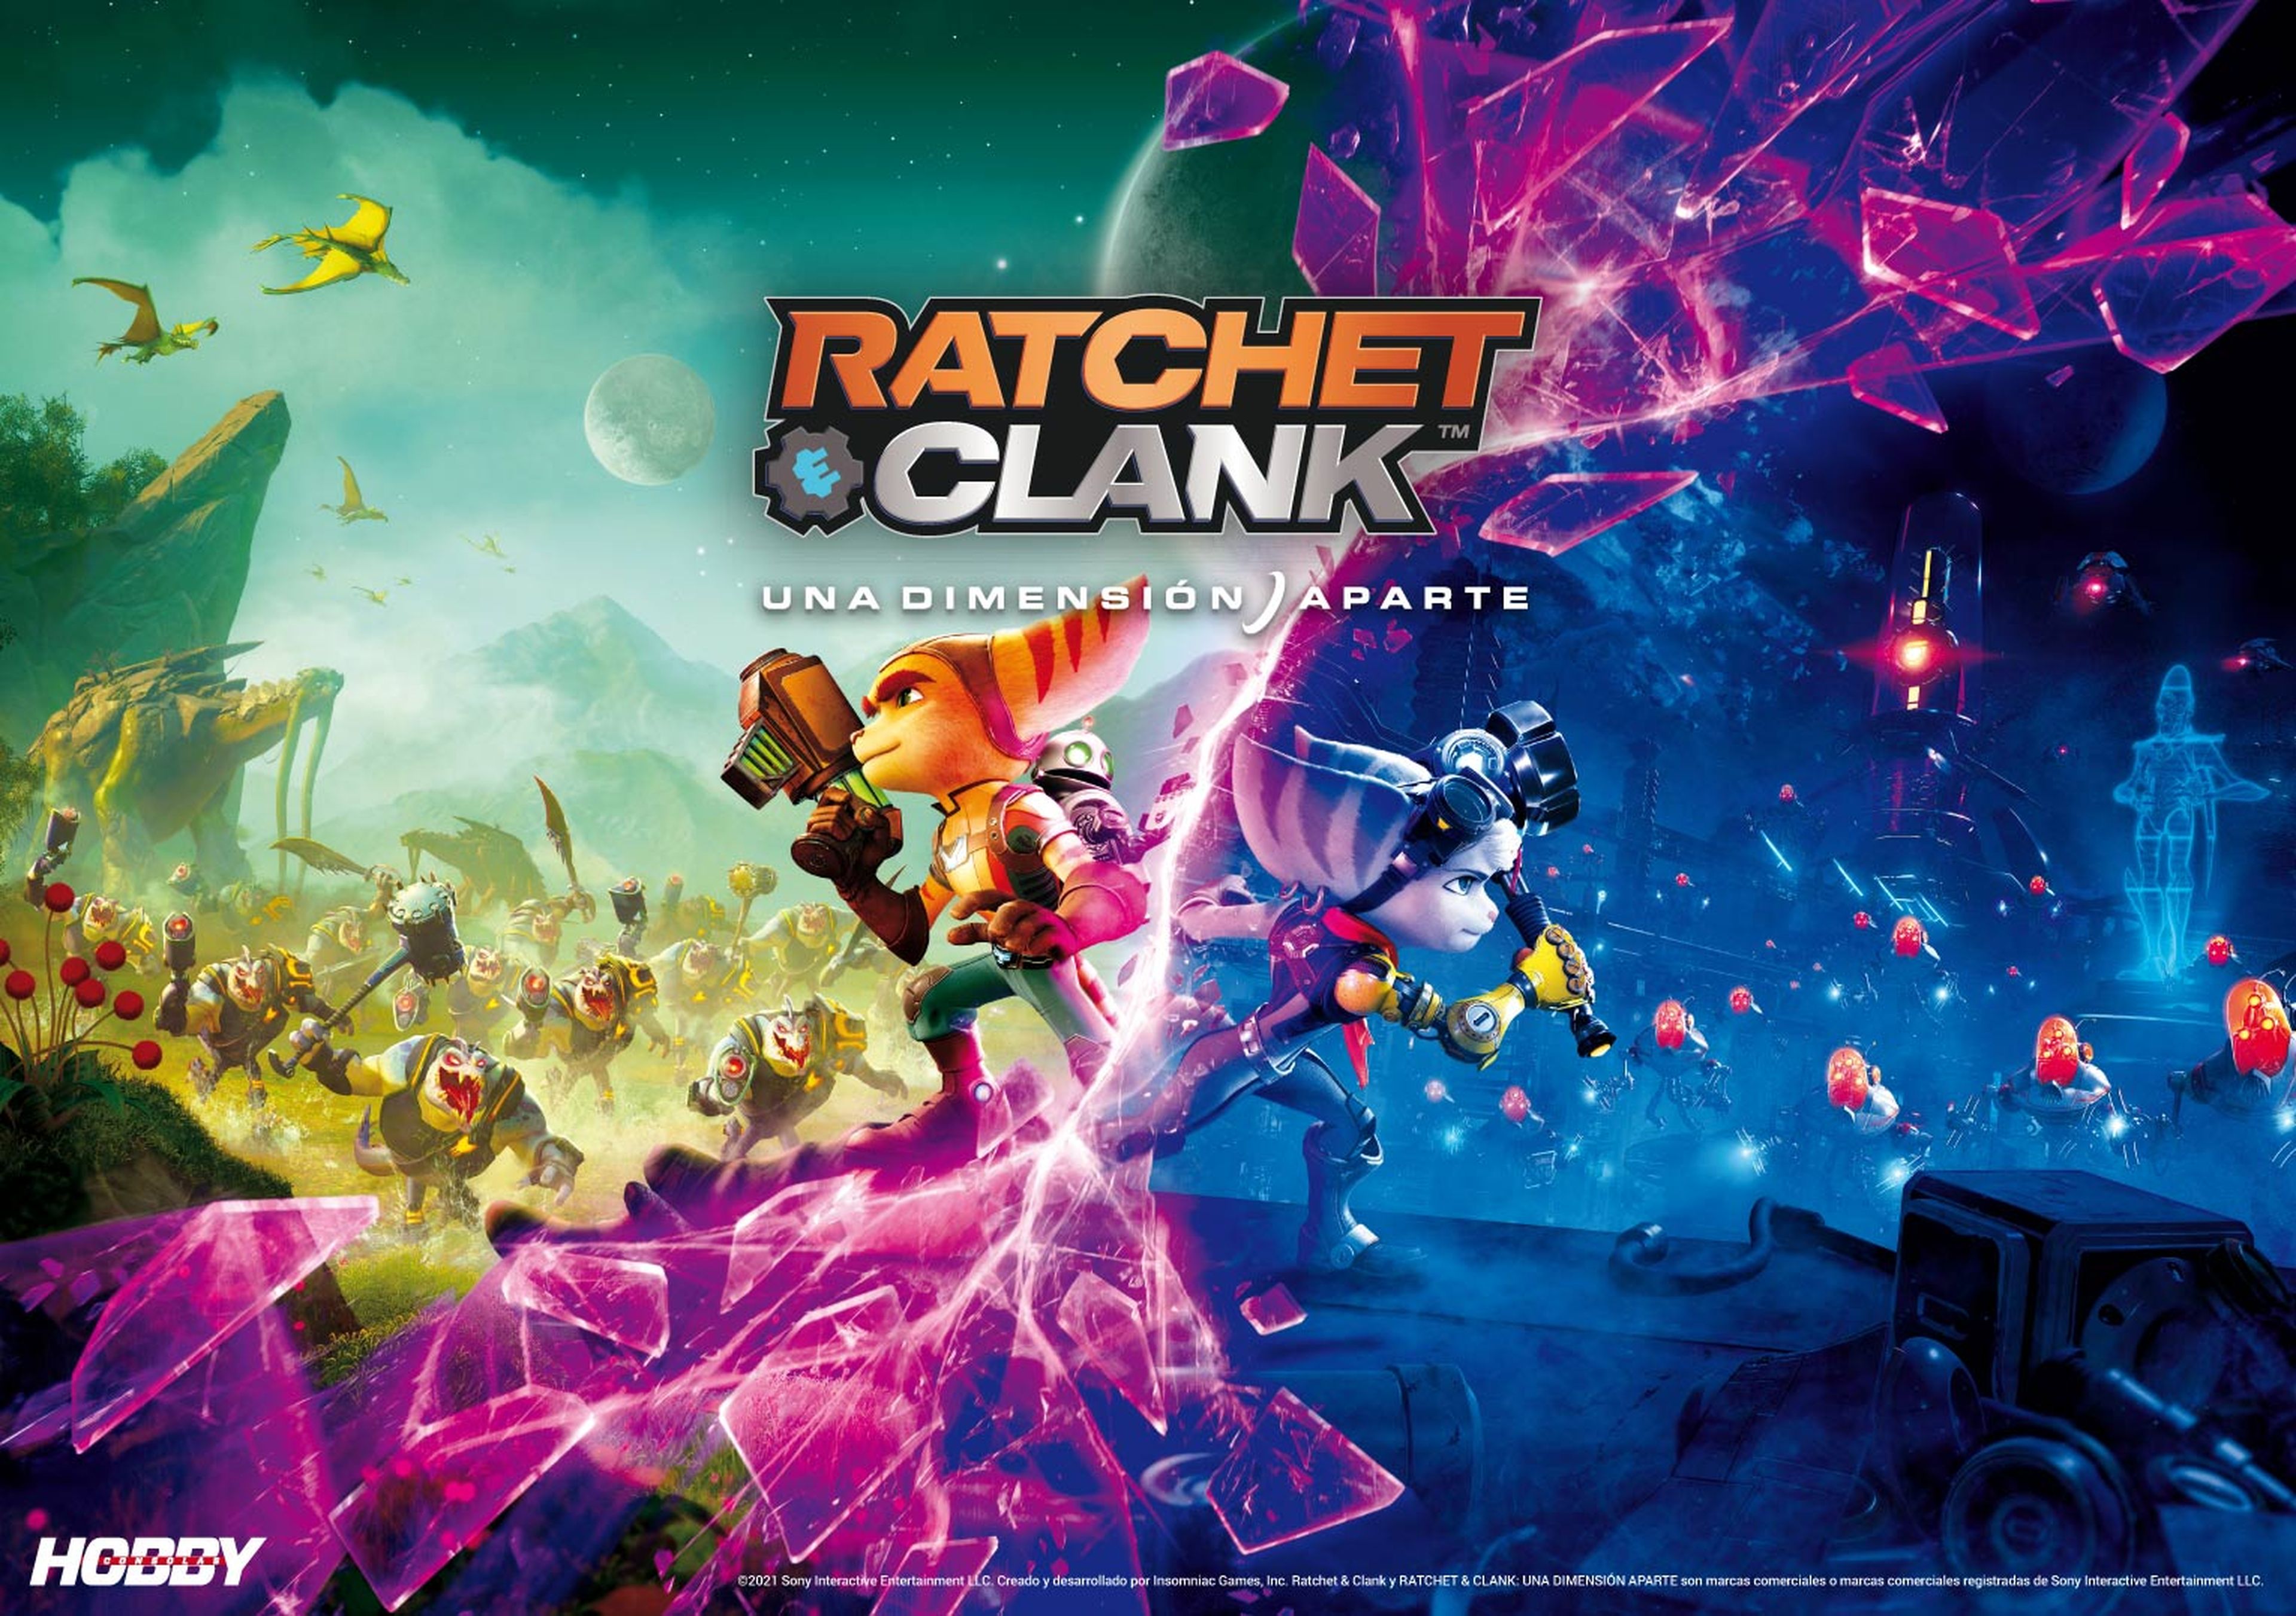 Hobby Consolas 359, a la venta con Ratchet & Clank en portada y en un póster doble